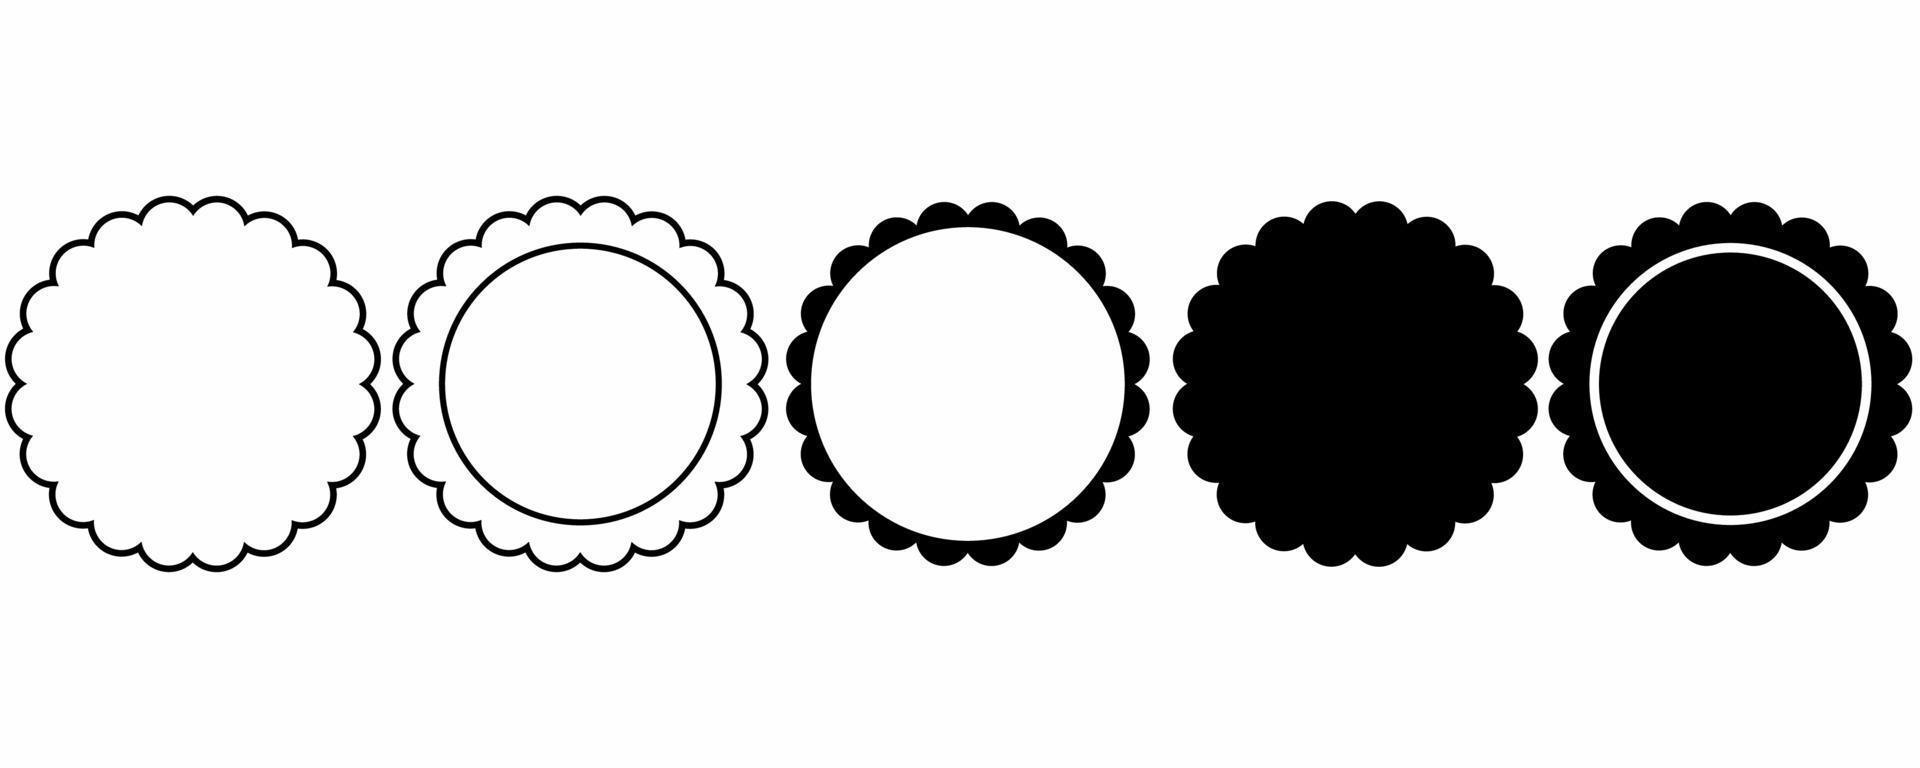 contorno silhueta círculo conjunto de molduras recortadas isolado no fundo branco vetor